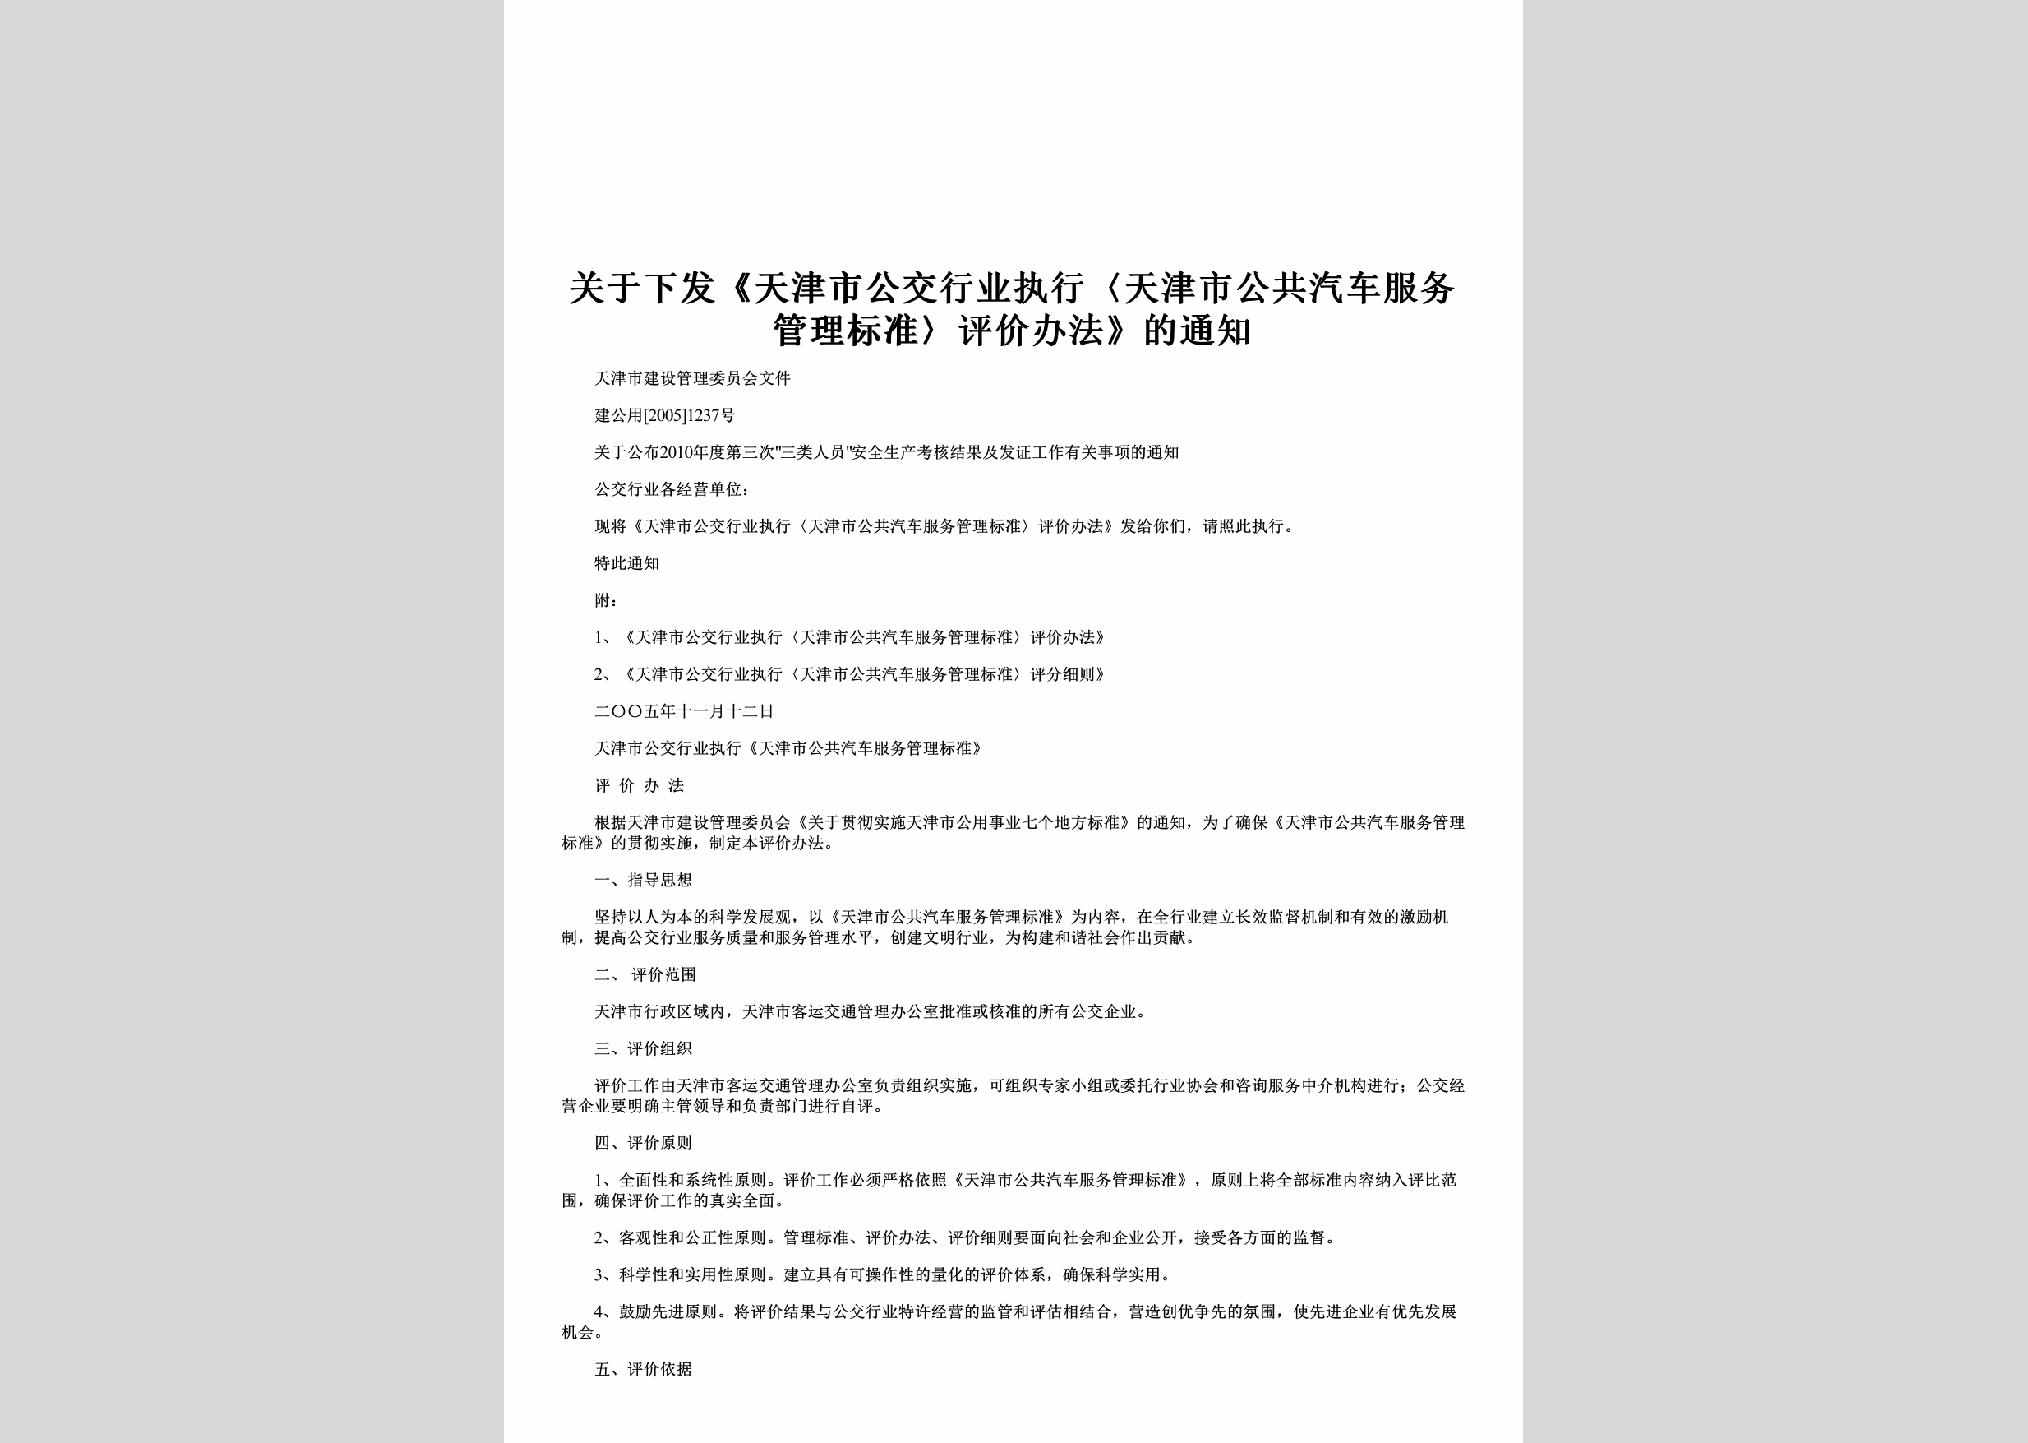 建公用[2005]1237号：关于下发《天津市公交行业执行〈天津市公共汽车服务管理标准〉评价办法》的通知